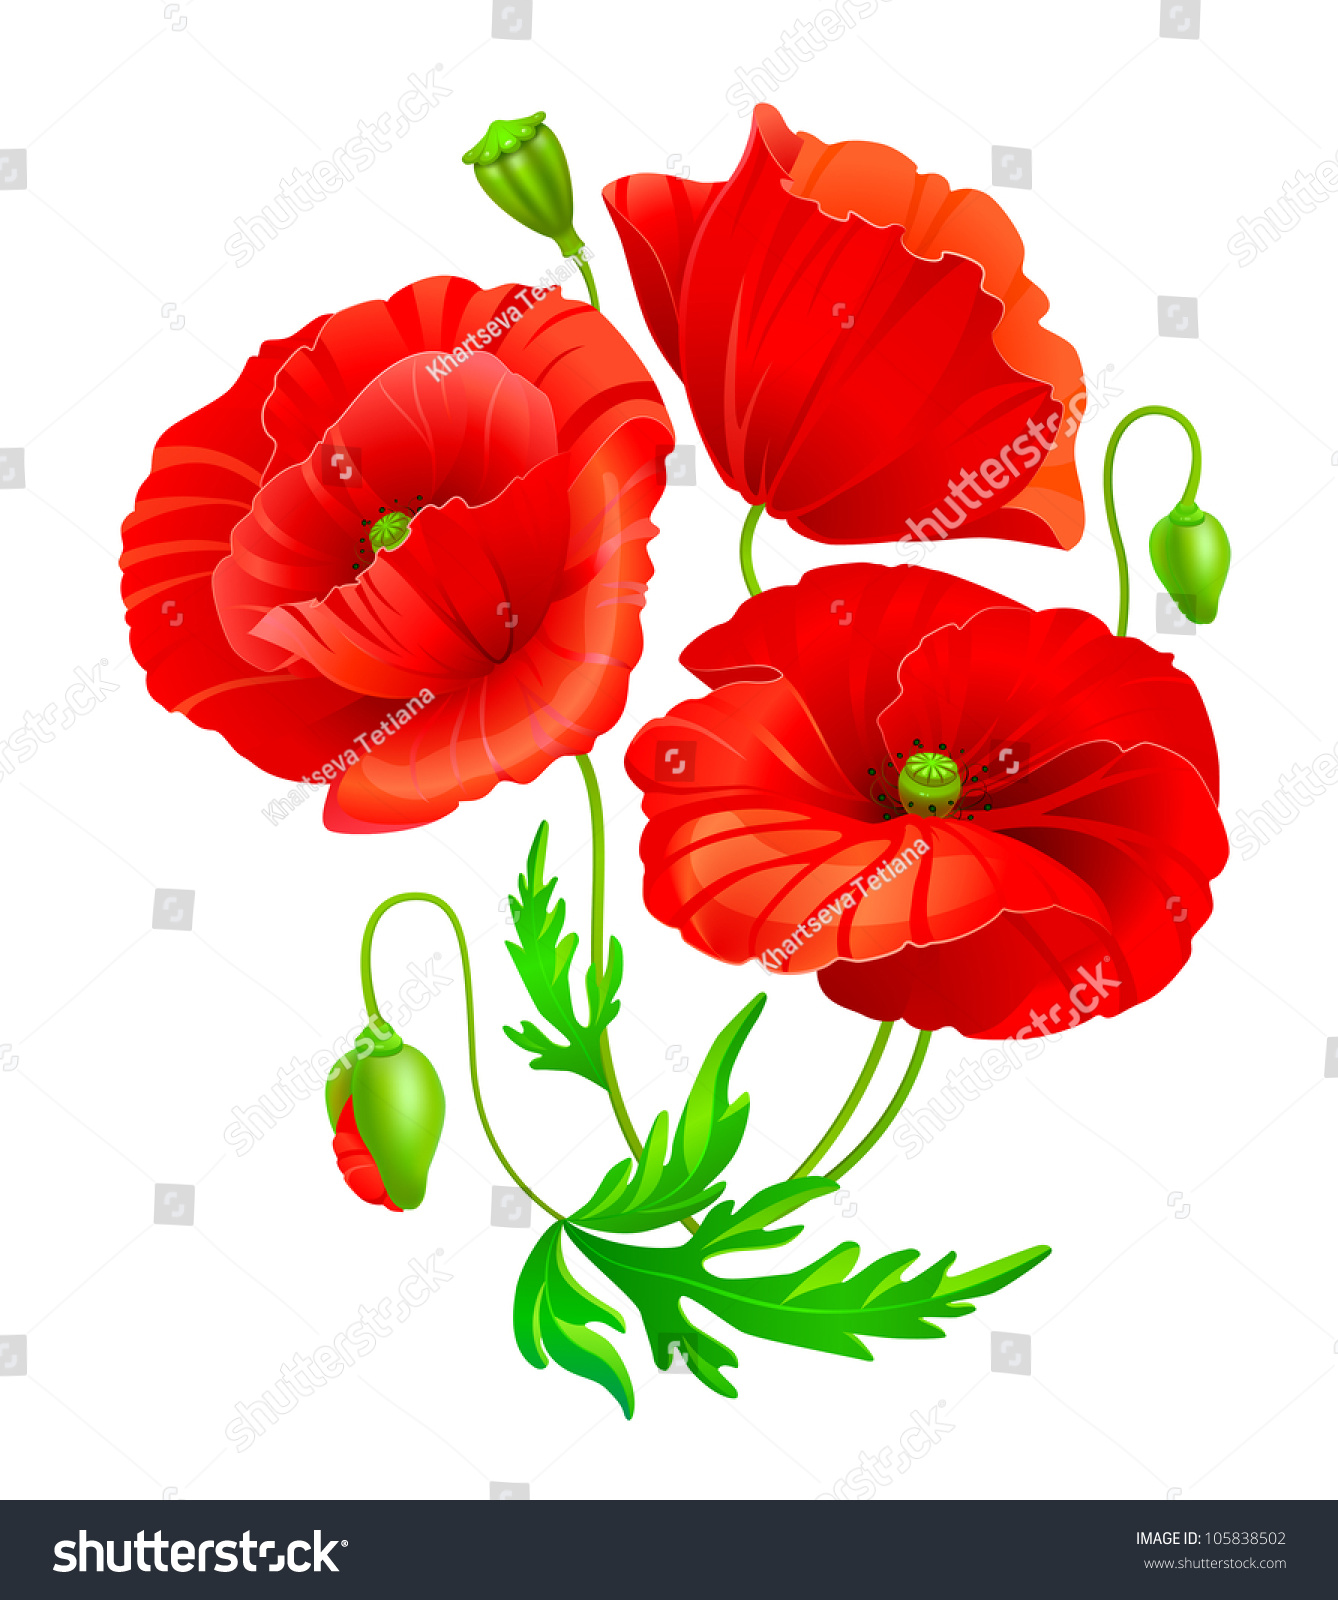 Vector Poppy Flowers - 105838502 : Shutterstock